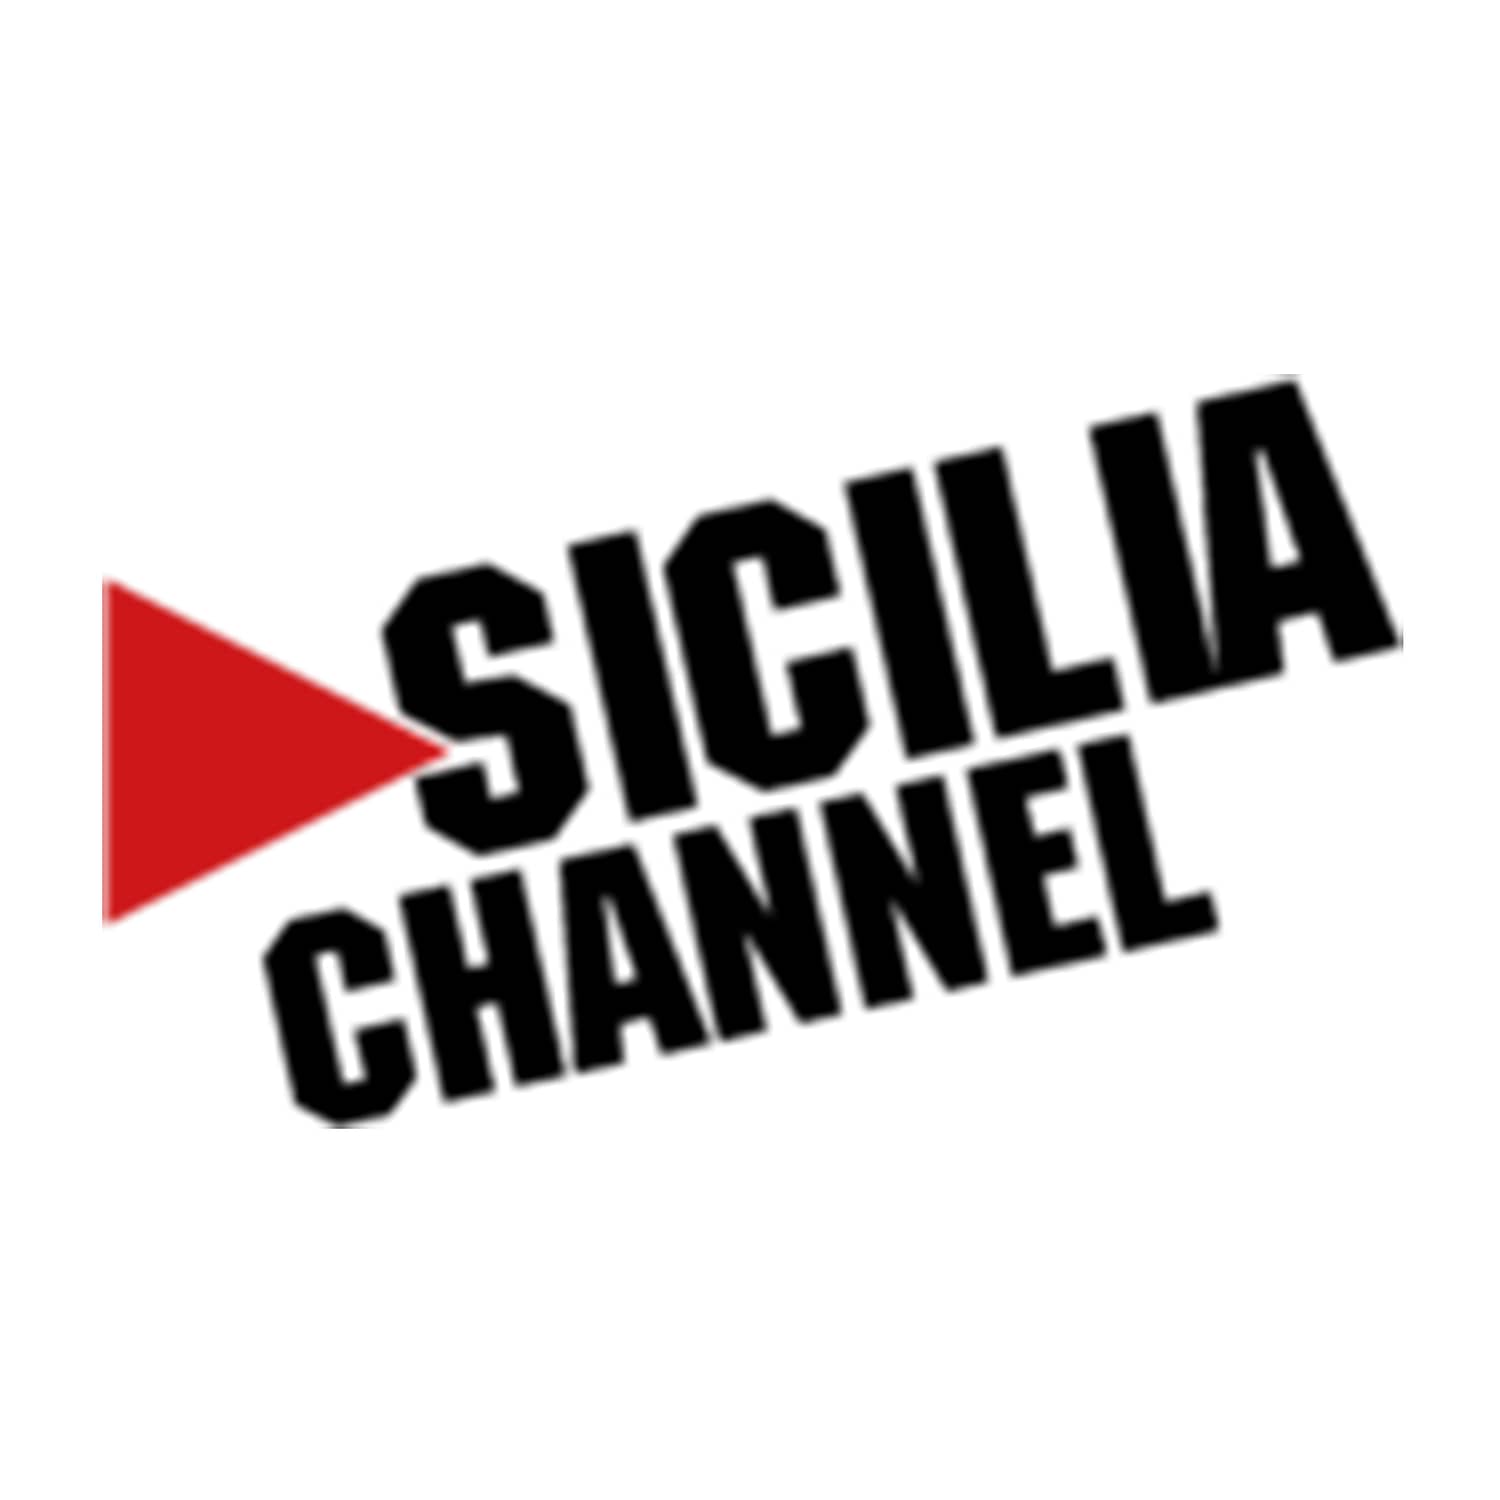 Sicilia Channel - il quotidiano di soluzione globale